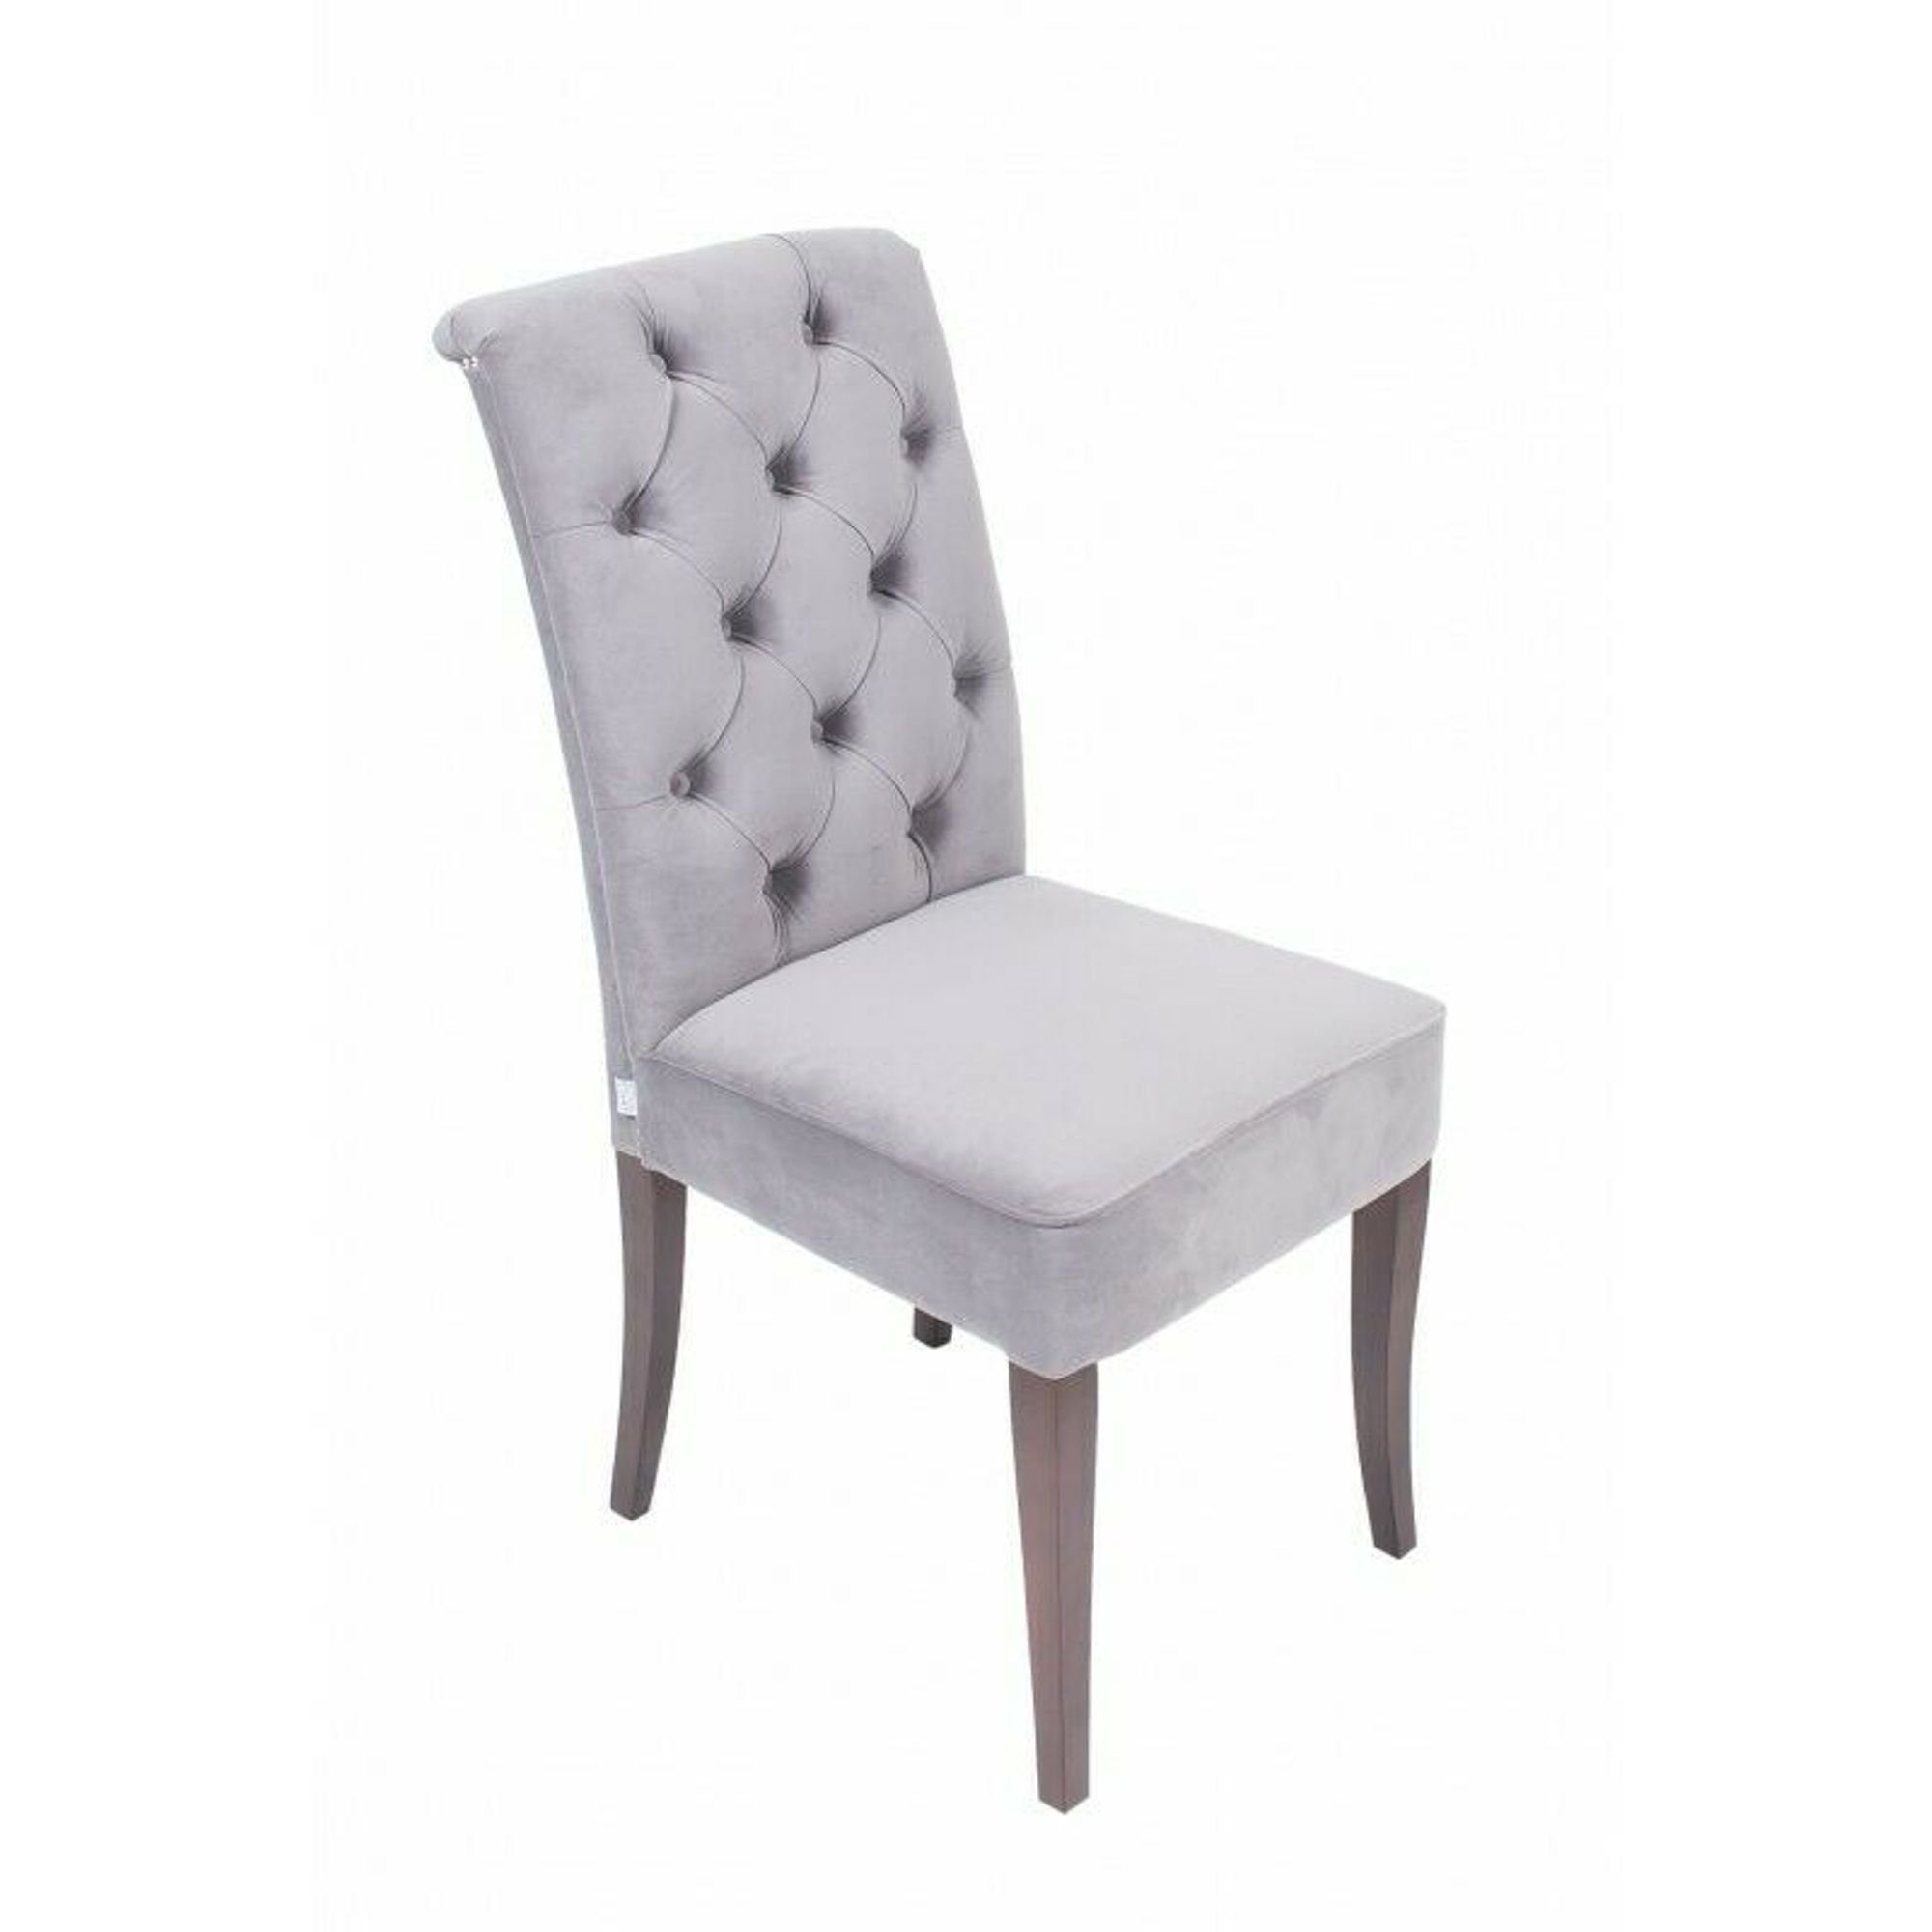 JVmoebel Stuhl, Klassische Chesterfield Polster Sessel Stuhl 1 Sitzer Lehn Sühle Textil Grau